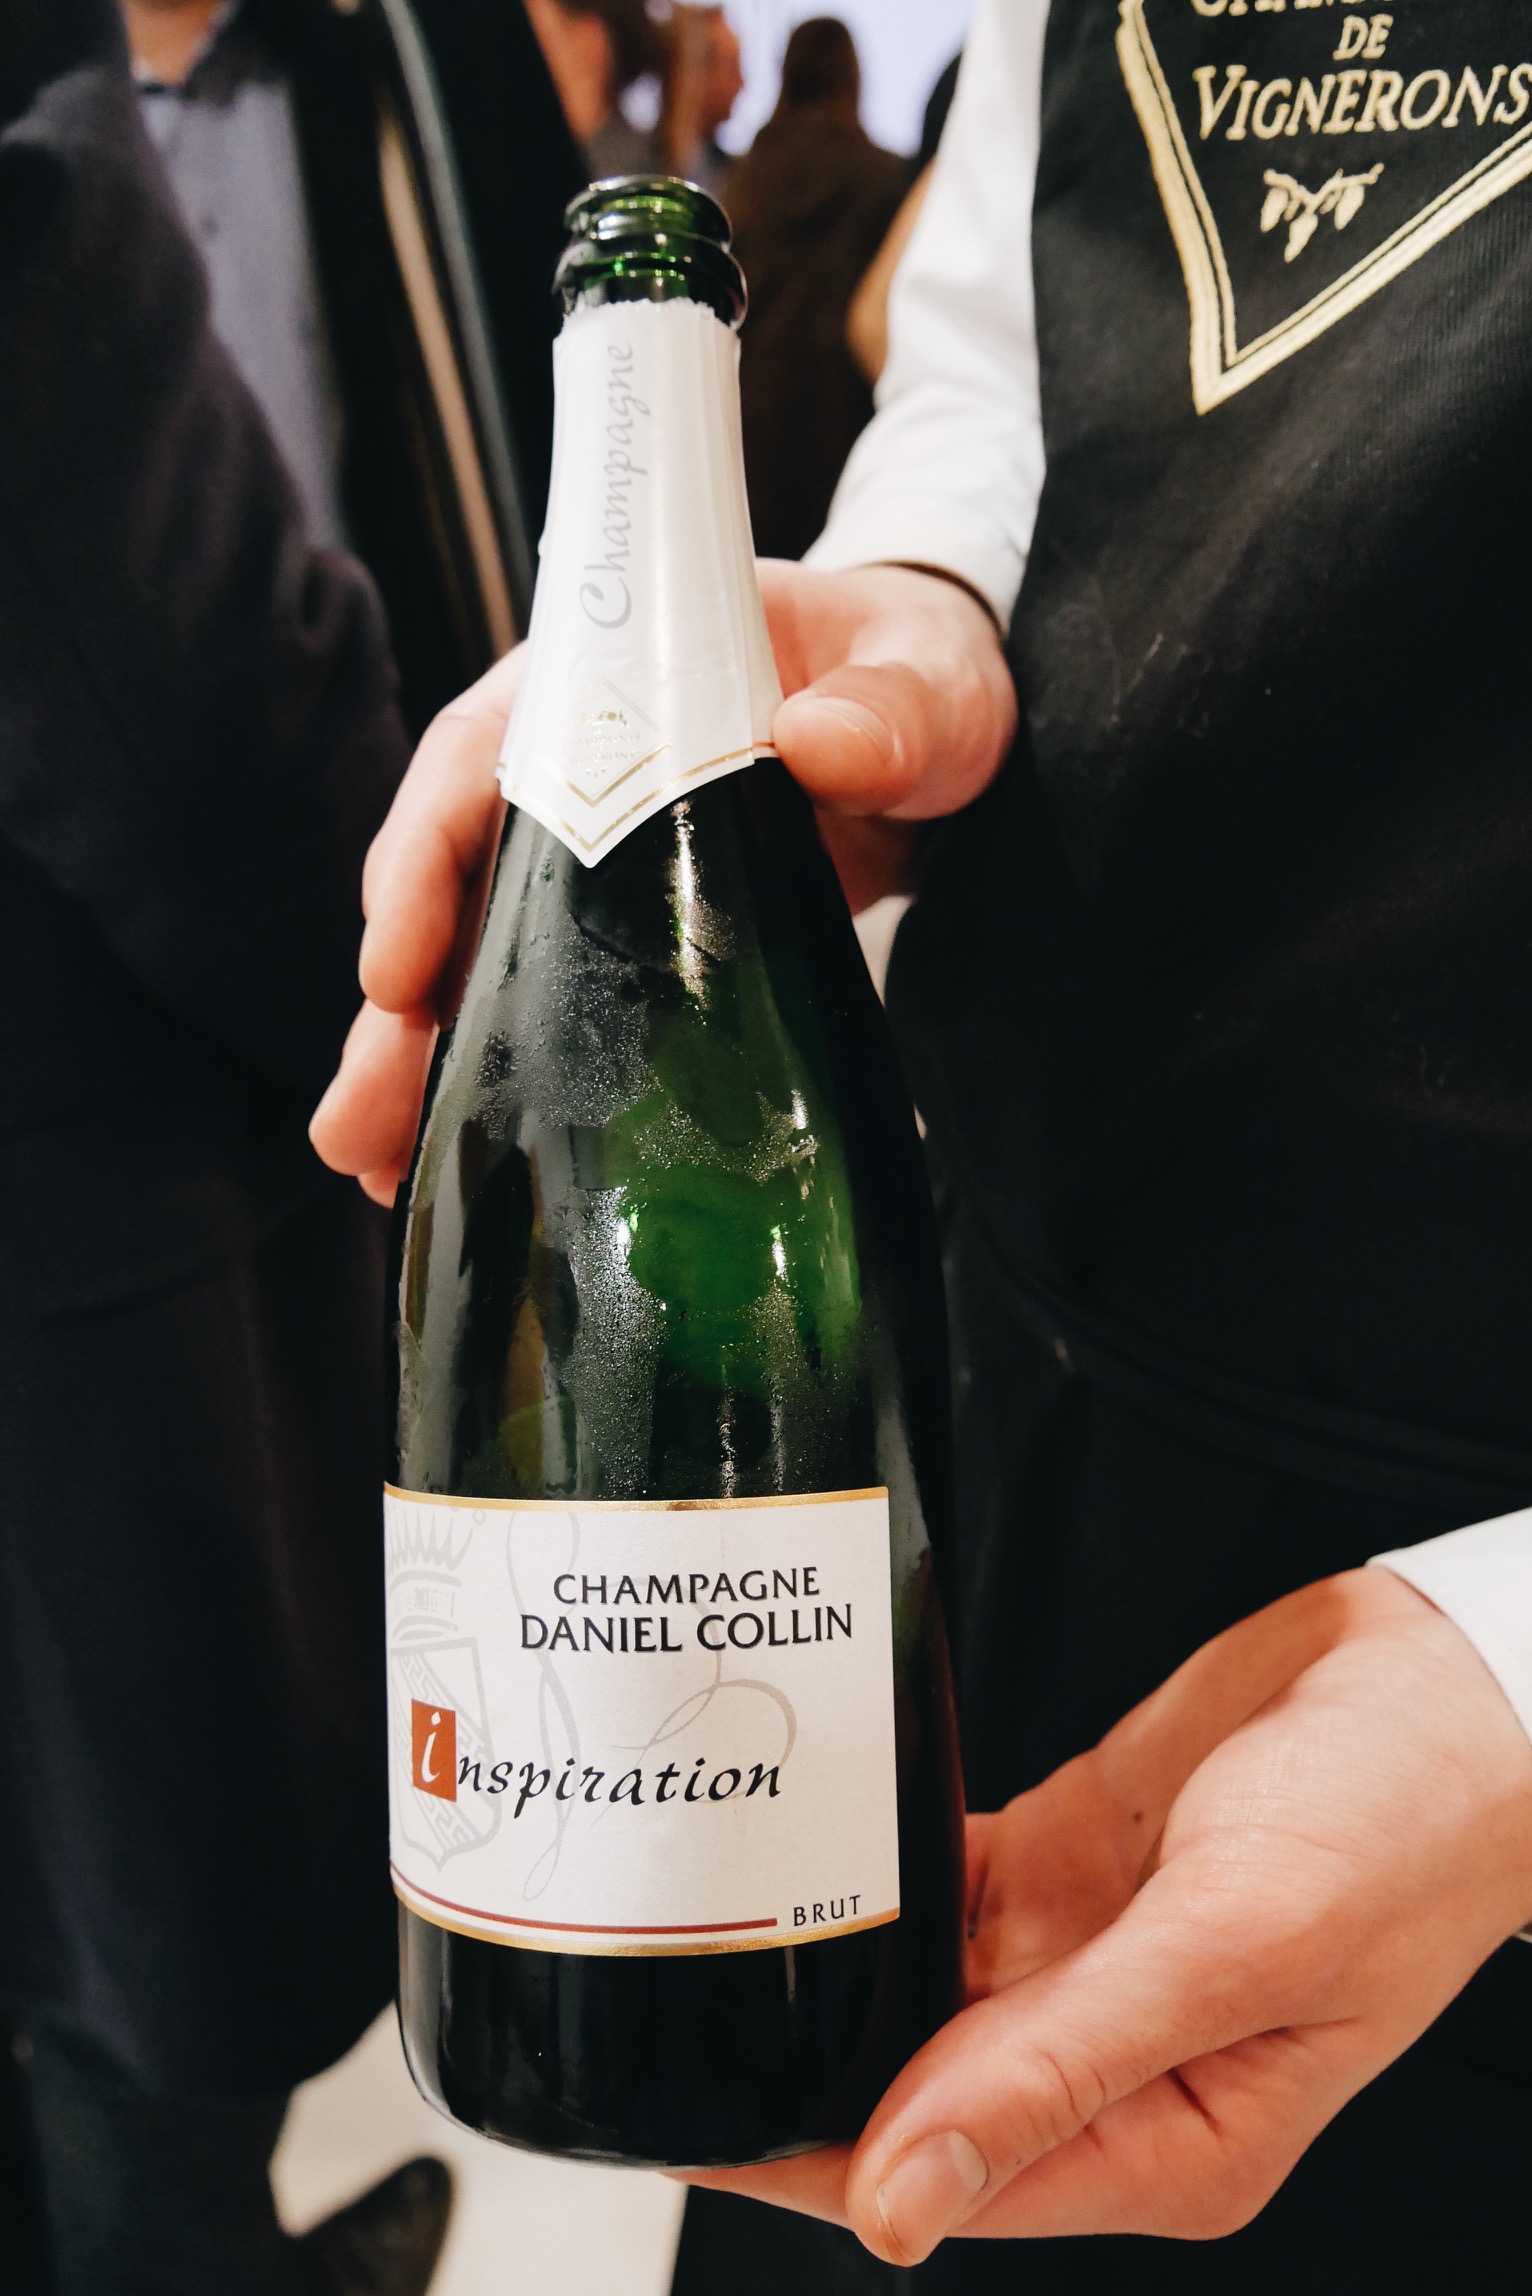 Champagne-Daniel-Collin-côte-des-blancs-dégustation-champagnes-de-vignerons-photo-usofparis-blog